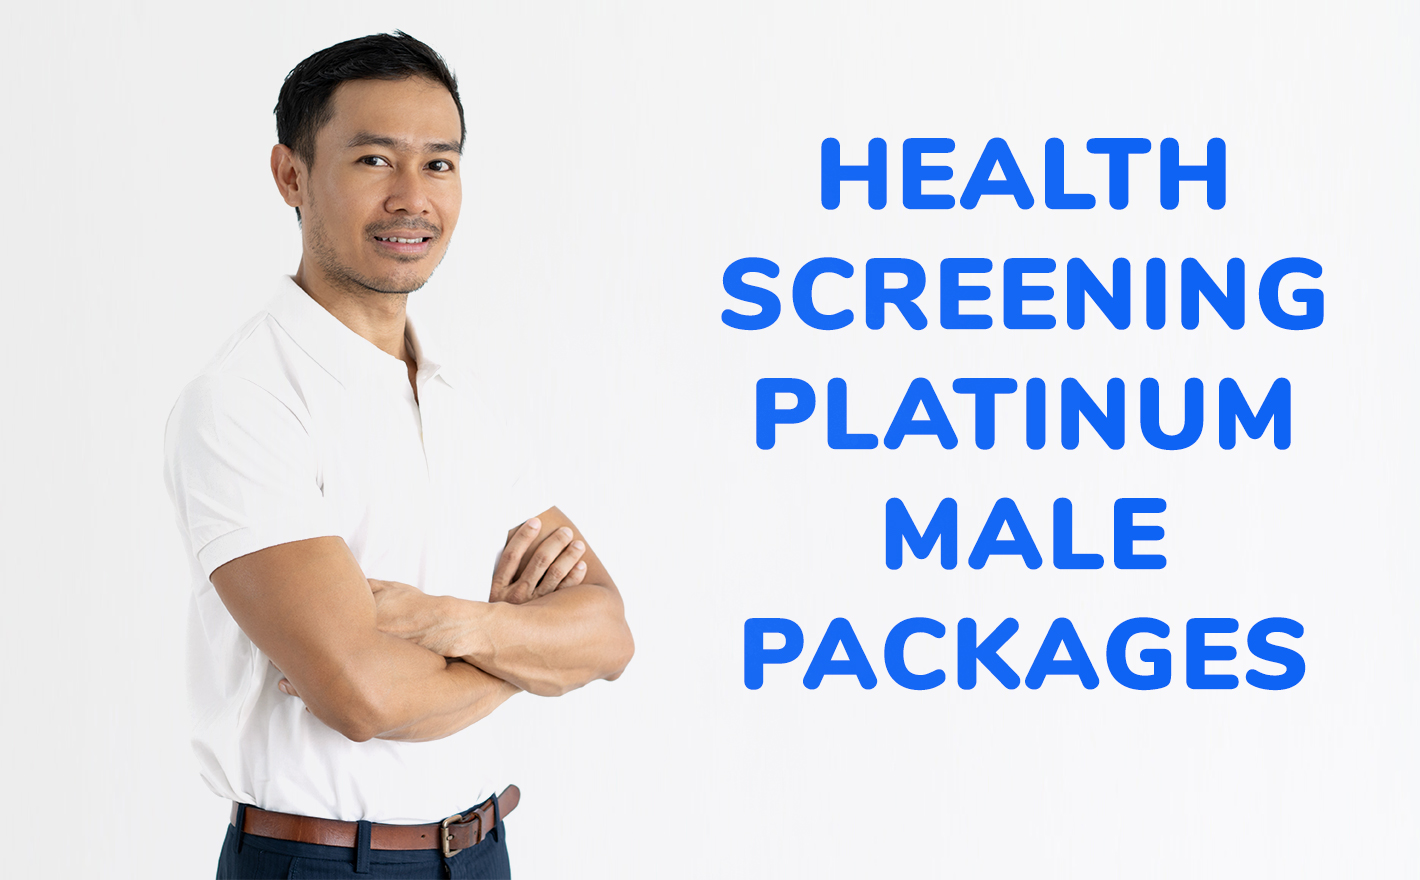 Health Screening Platinum Male Package